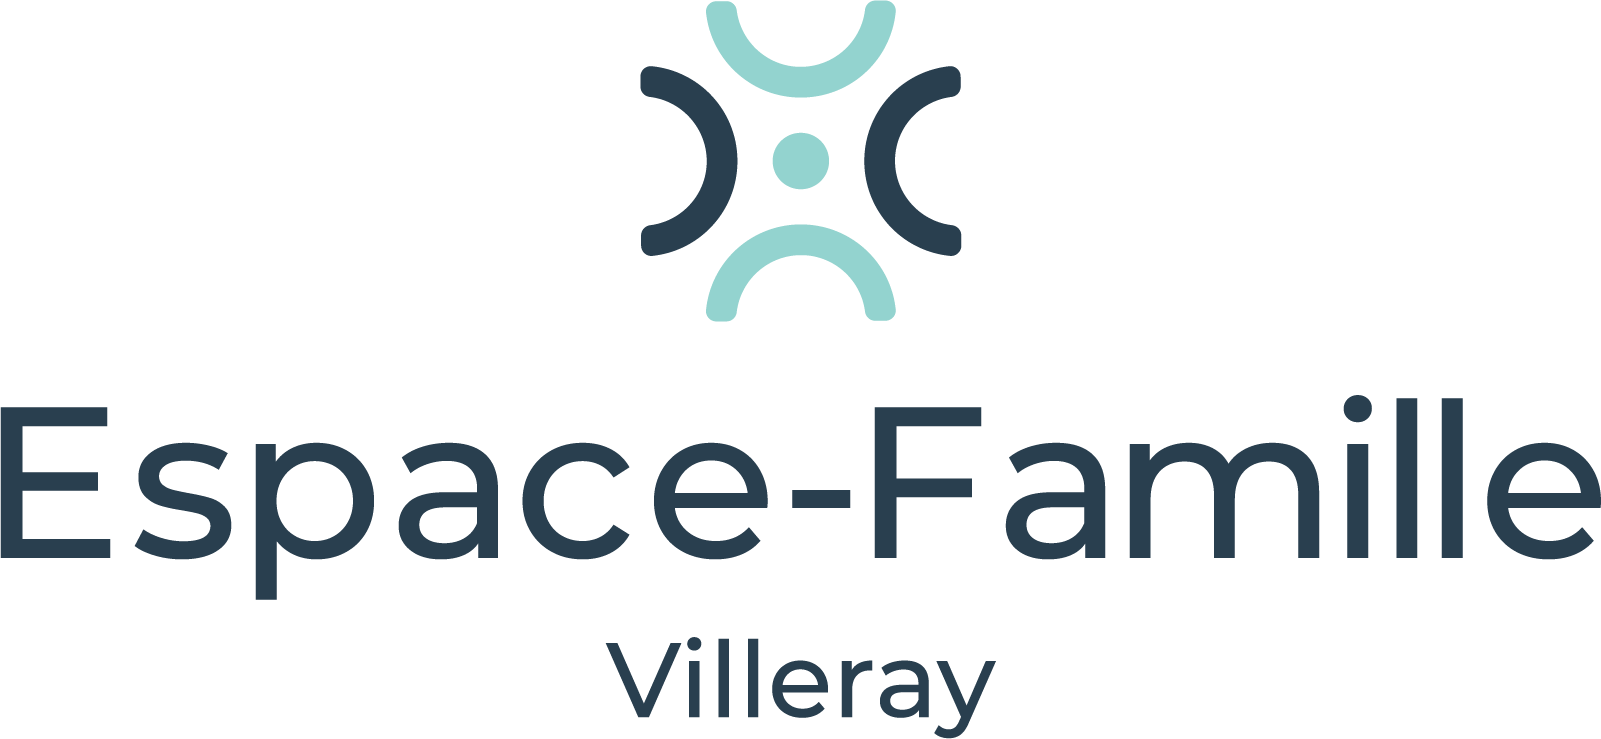 <p>Espace Famille Villeray est dédié à accompagner et outiller les familles de la grossesse à la maternelle pour qu’elles gagnent en confiance en elles et en leurs compétences parentales.</p>